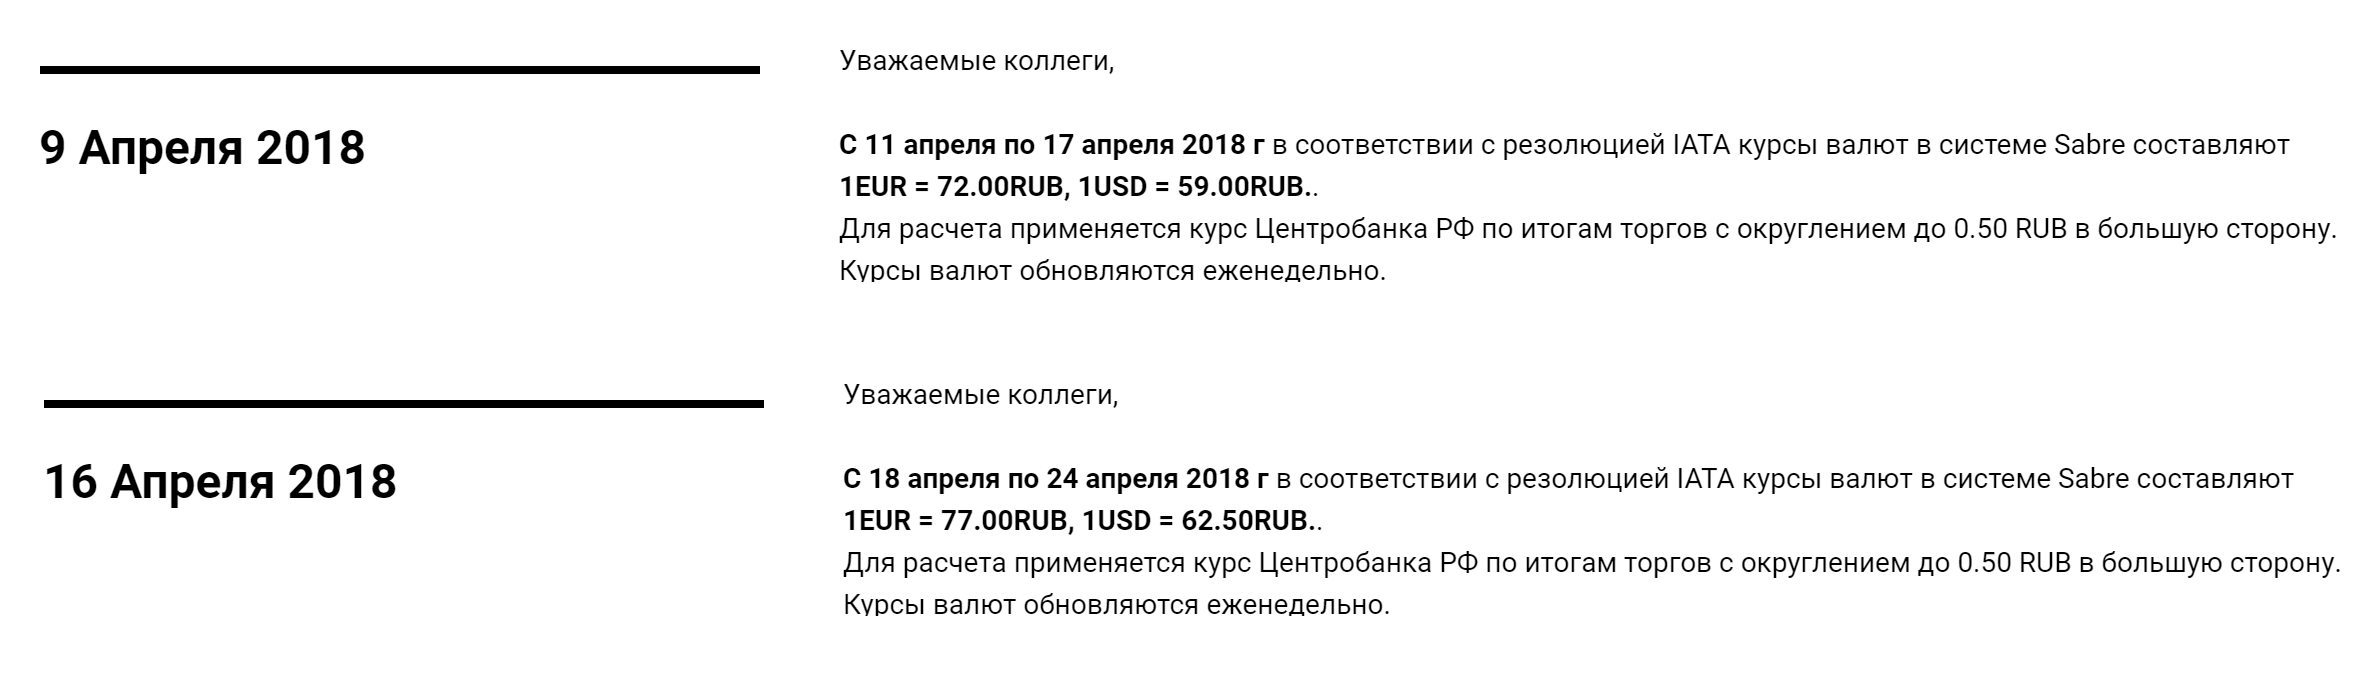 С 18 по 24 апреля для авиакомпаний 1 евро стоил 77 рублей, даже если бы рубль подешевел вдвое. Курсы ИАТА округляются до 50 копеек